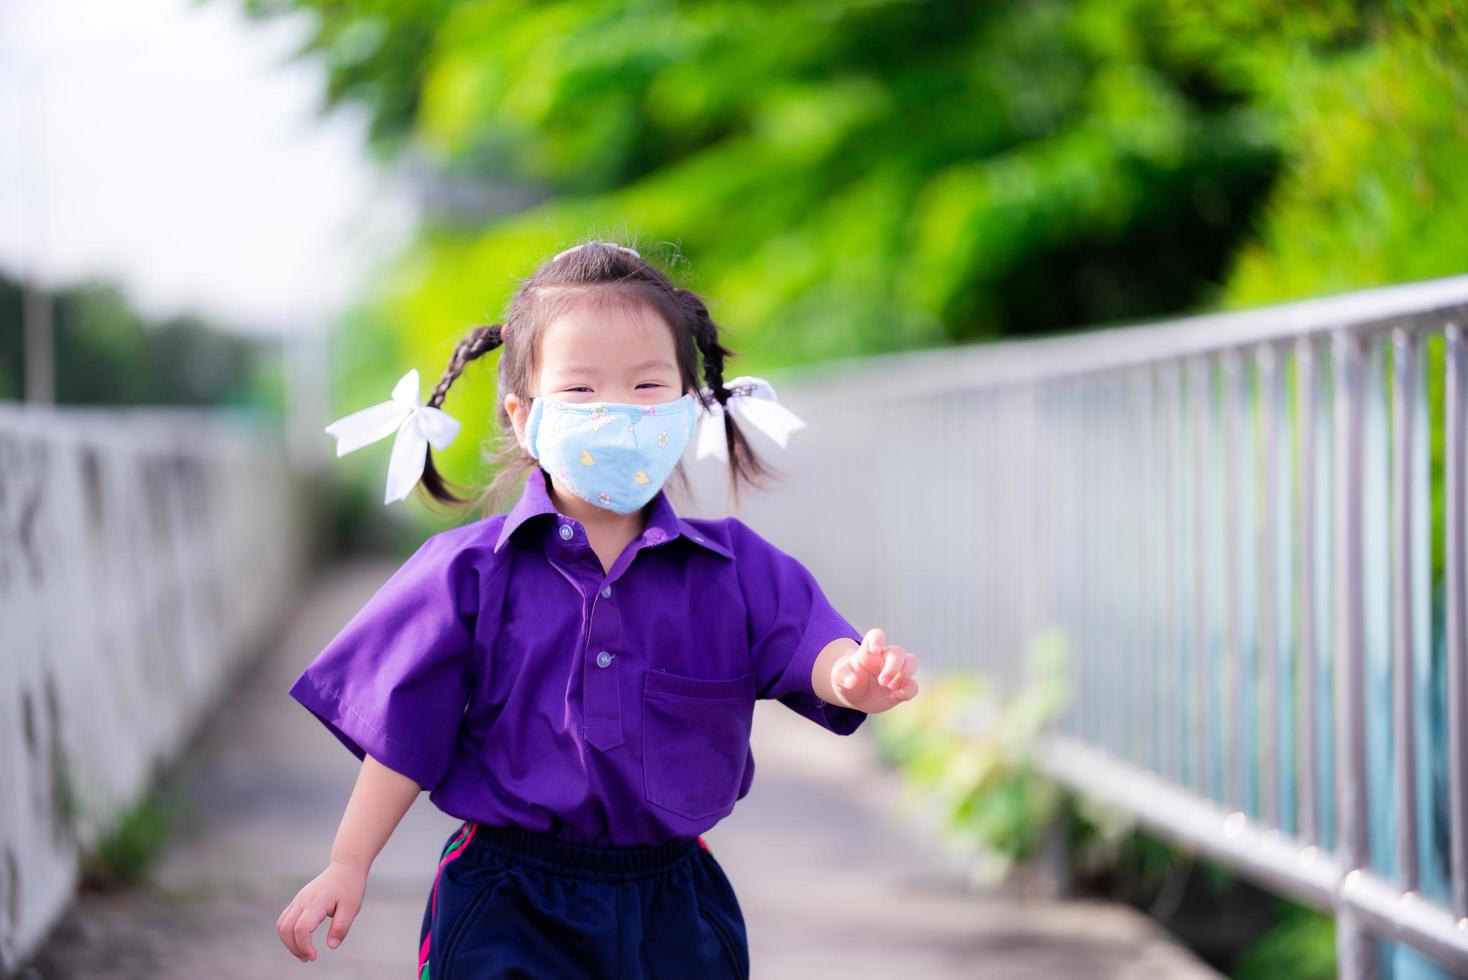 Student mit blauer Stoffmaske läuft auf der Straße. Kinder tragen lila Sportuniformen der Schule. Mädchen lächeln süß unter der Maske. Ausbreitung von Coronavirus und giftigem Staub verhindern pm 2.5. Kind 3 Jahre alt foto